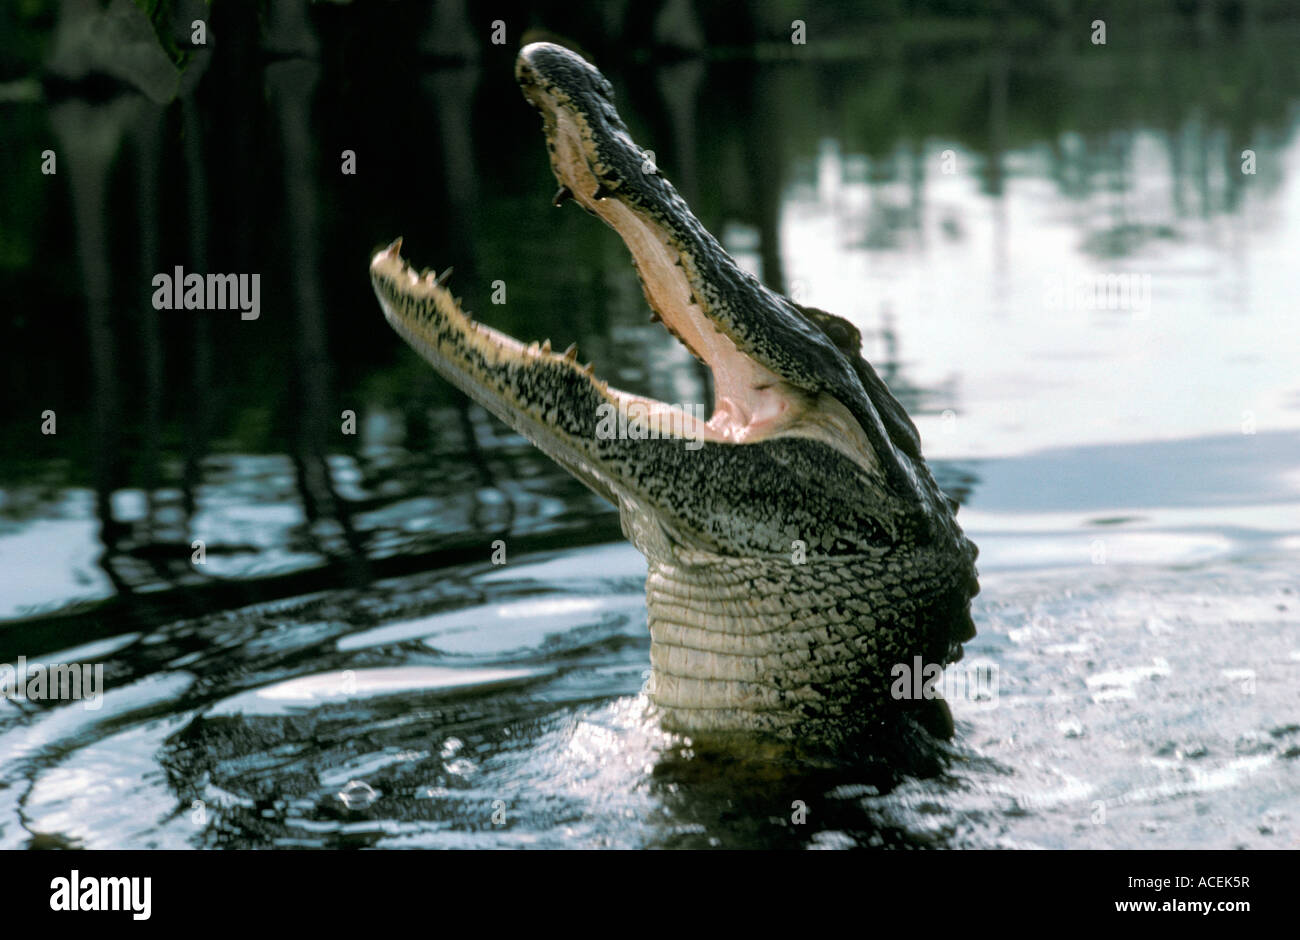 American Alligator Alligator mississppiensis appoggiata nella palude della Florida Foto Stock